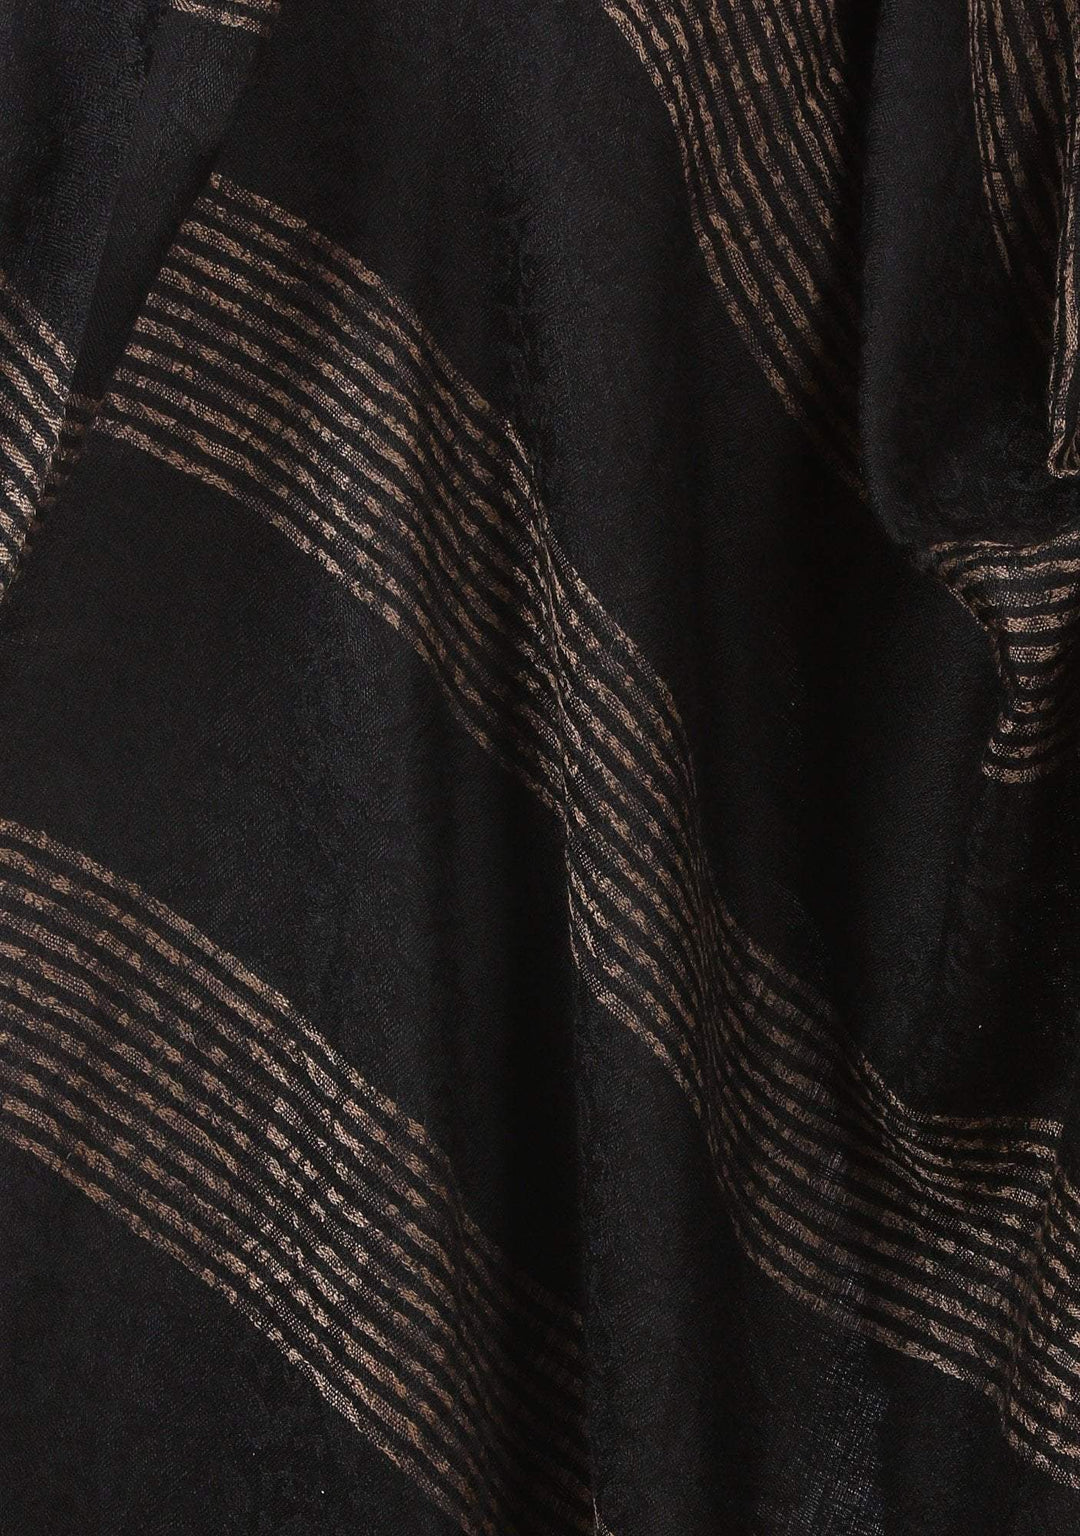 Pashtush India 70x200 Pashtush Women's Reversible Stole, with Stripes, Natural Wool (Black)